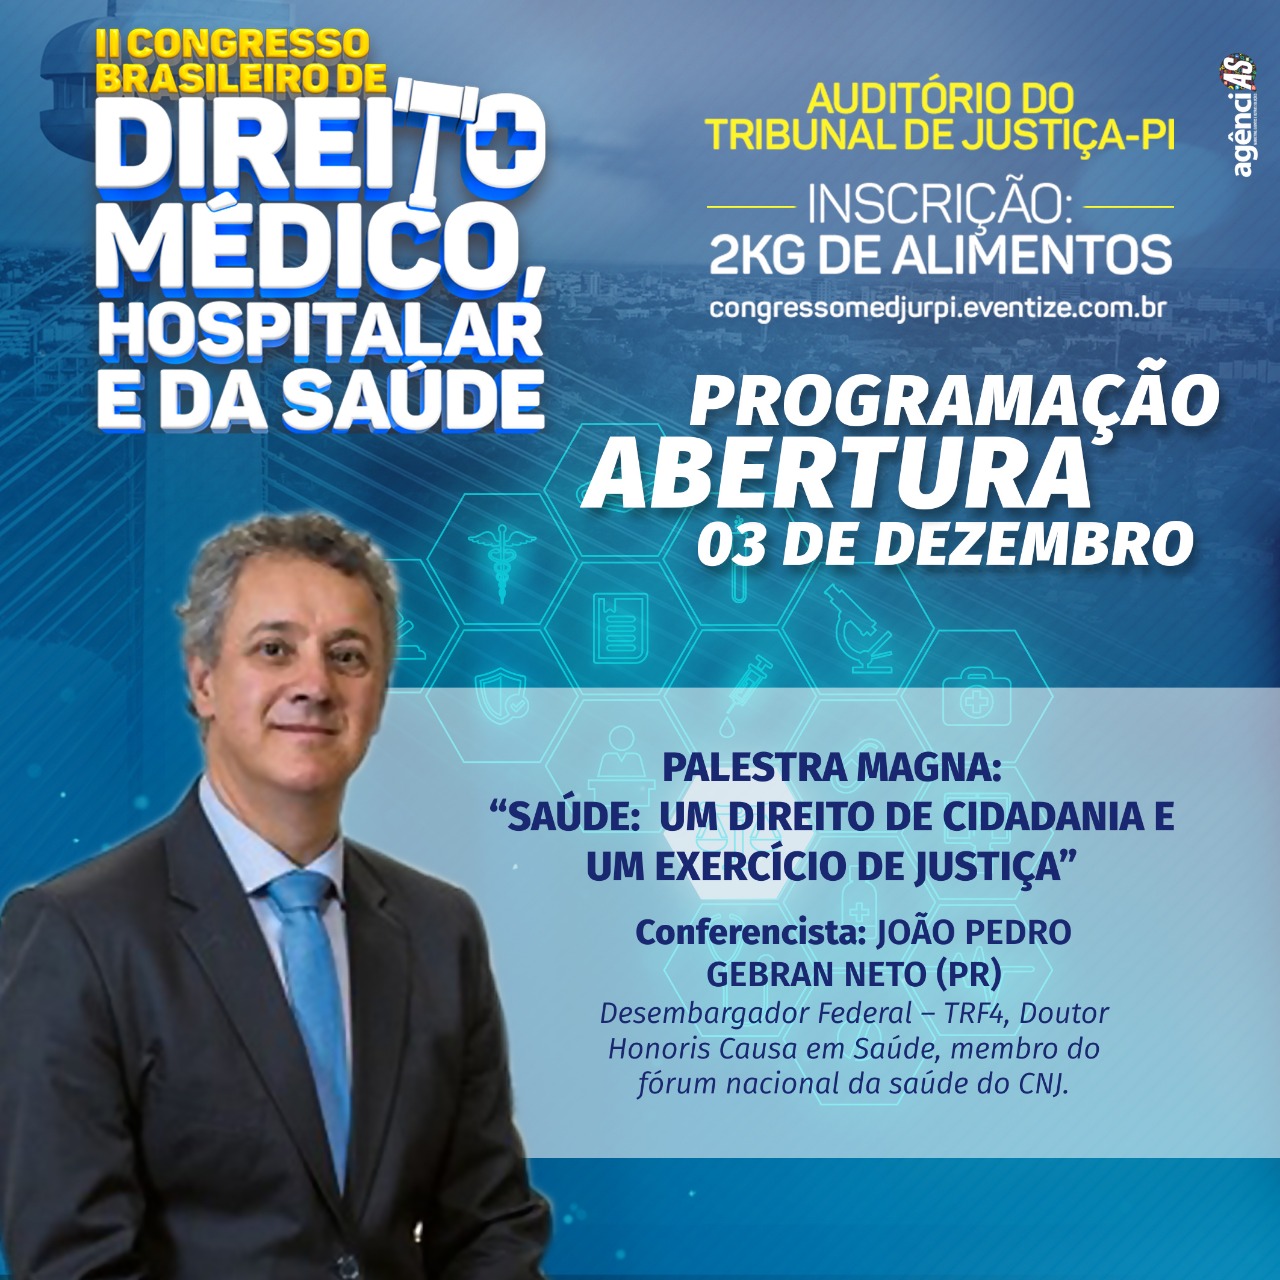 II Congresso Brasileiro de Direito Médico, Hospitalar e da Saúde 